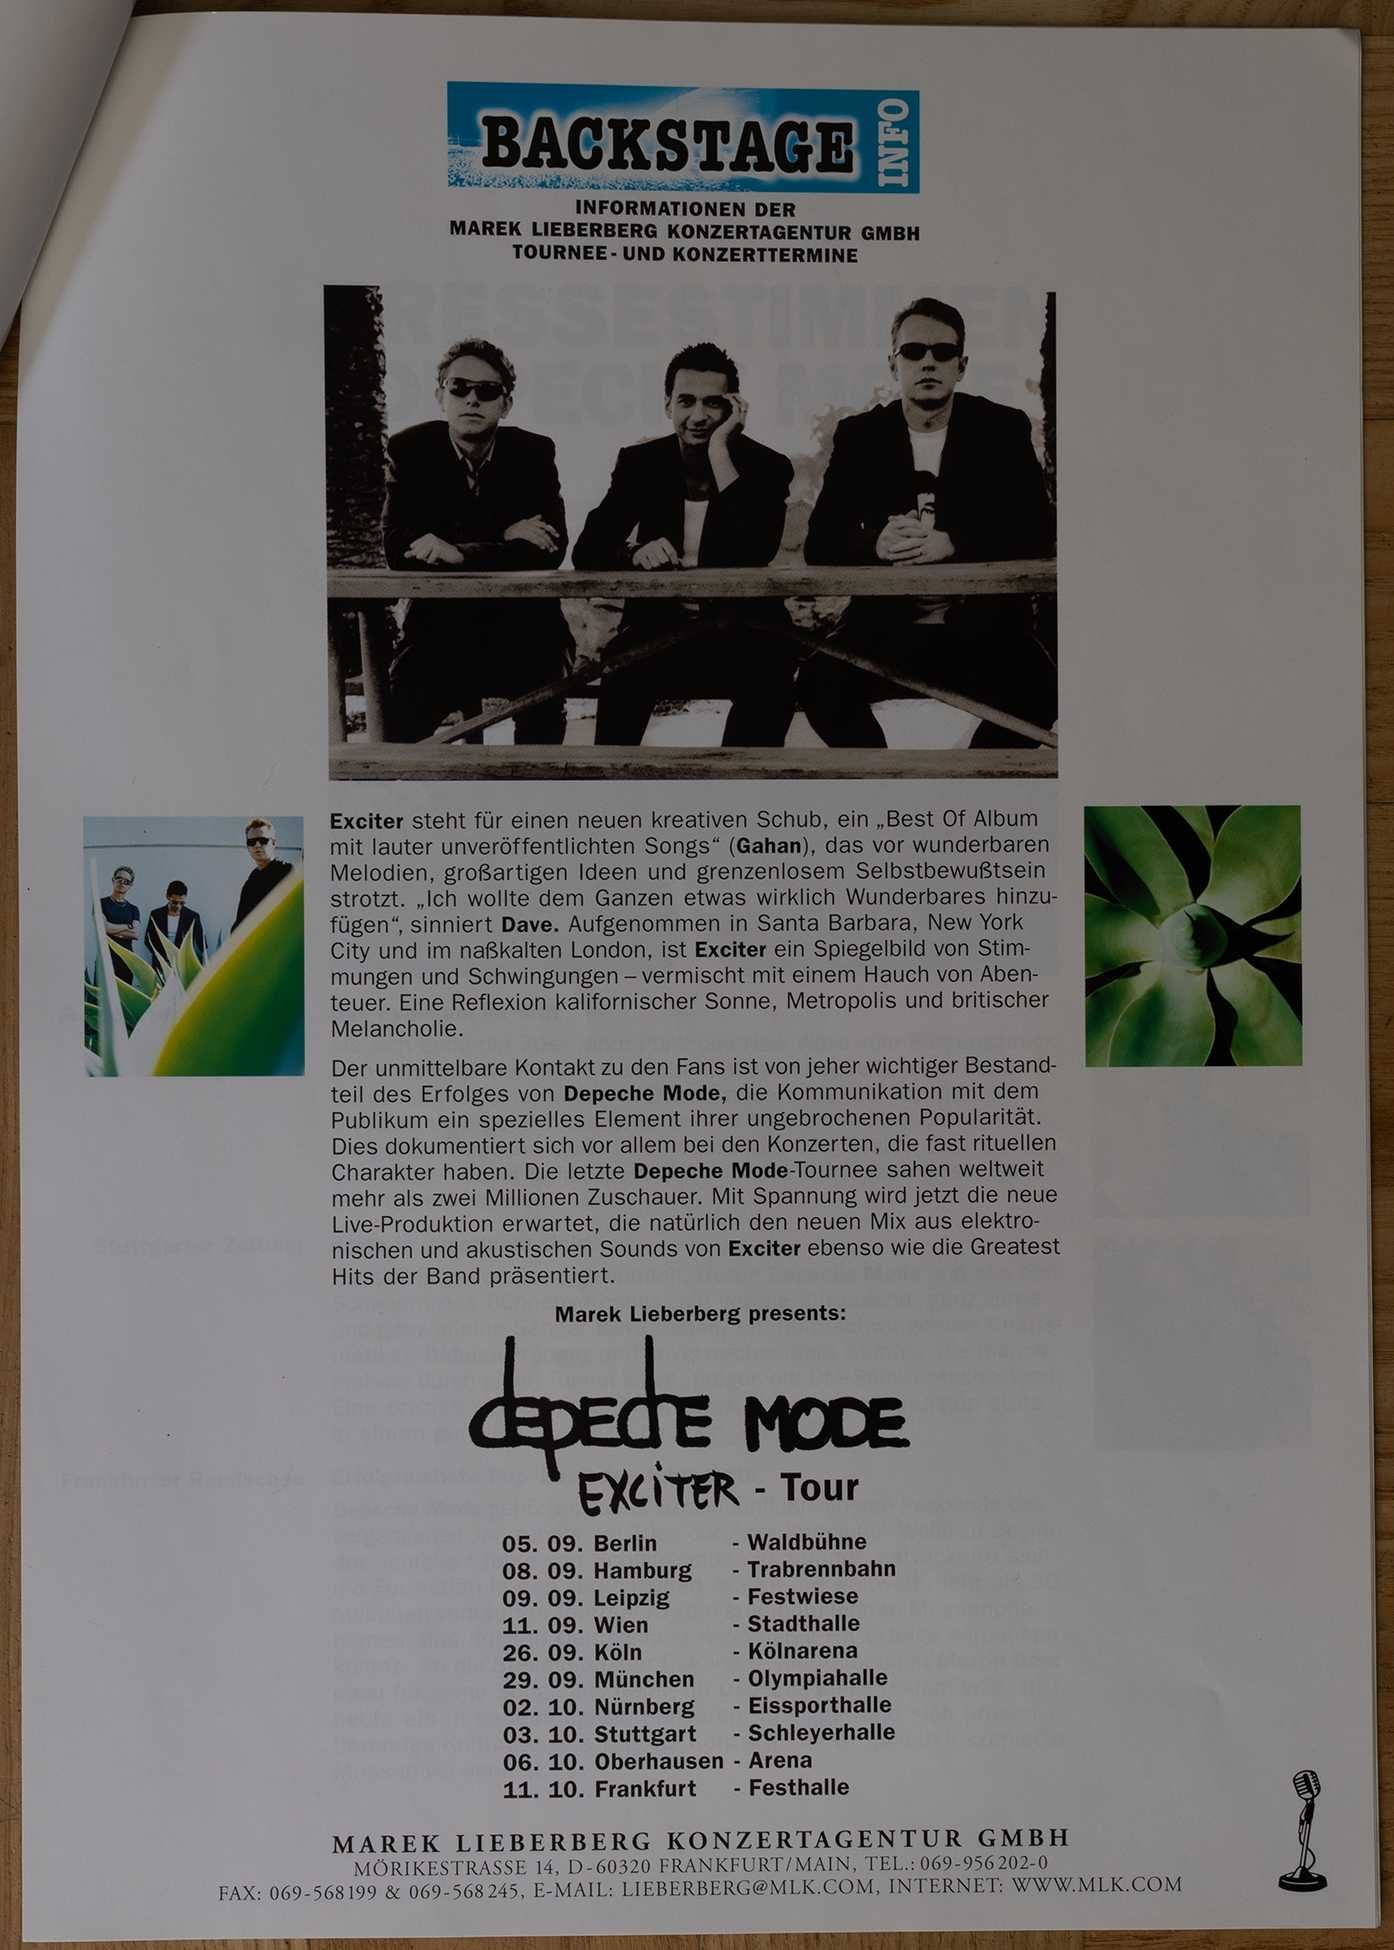 Depeche Mode - Exciter Tour - materiały prasowe